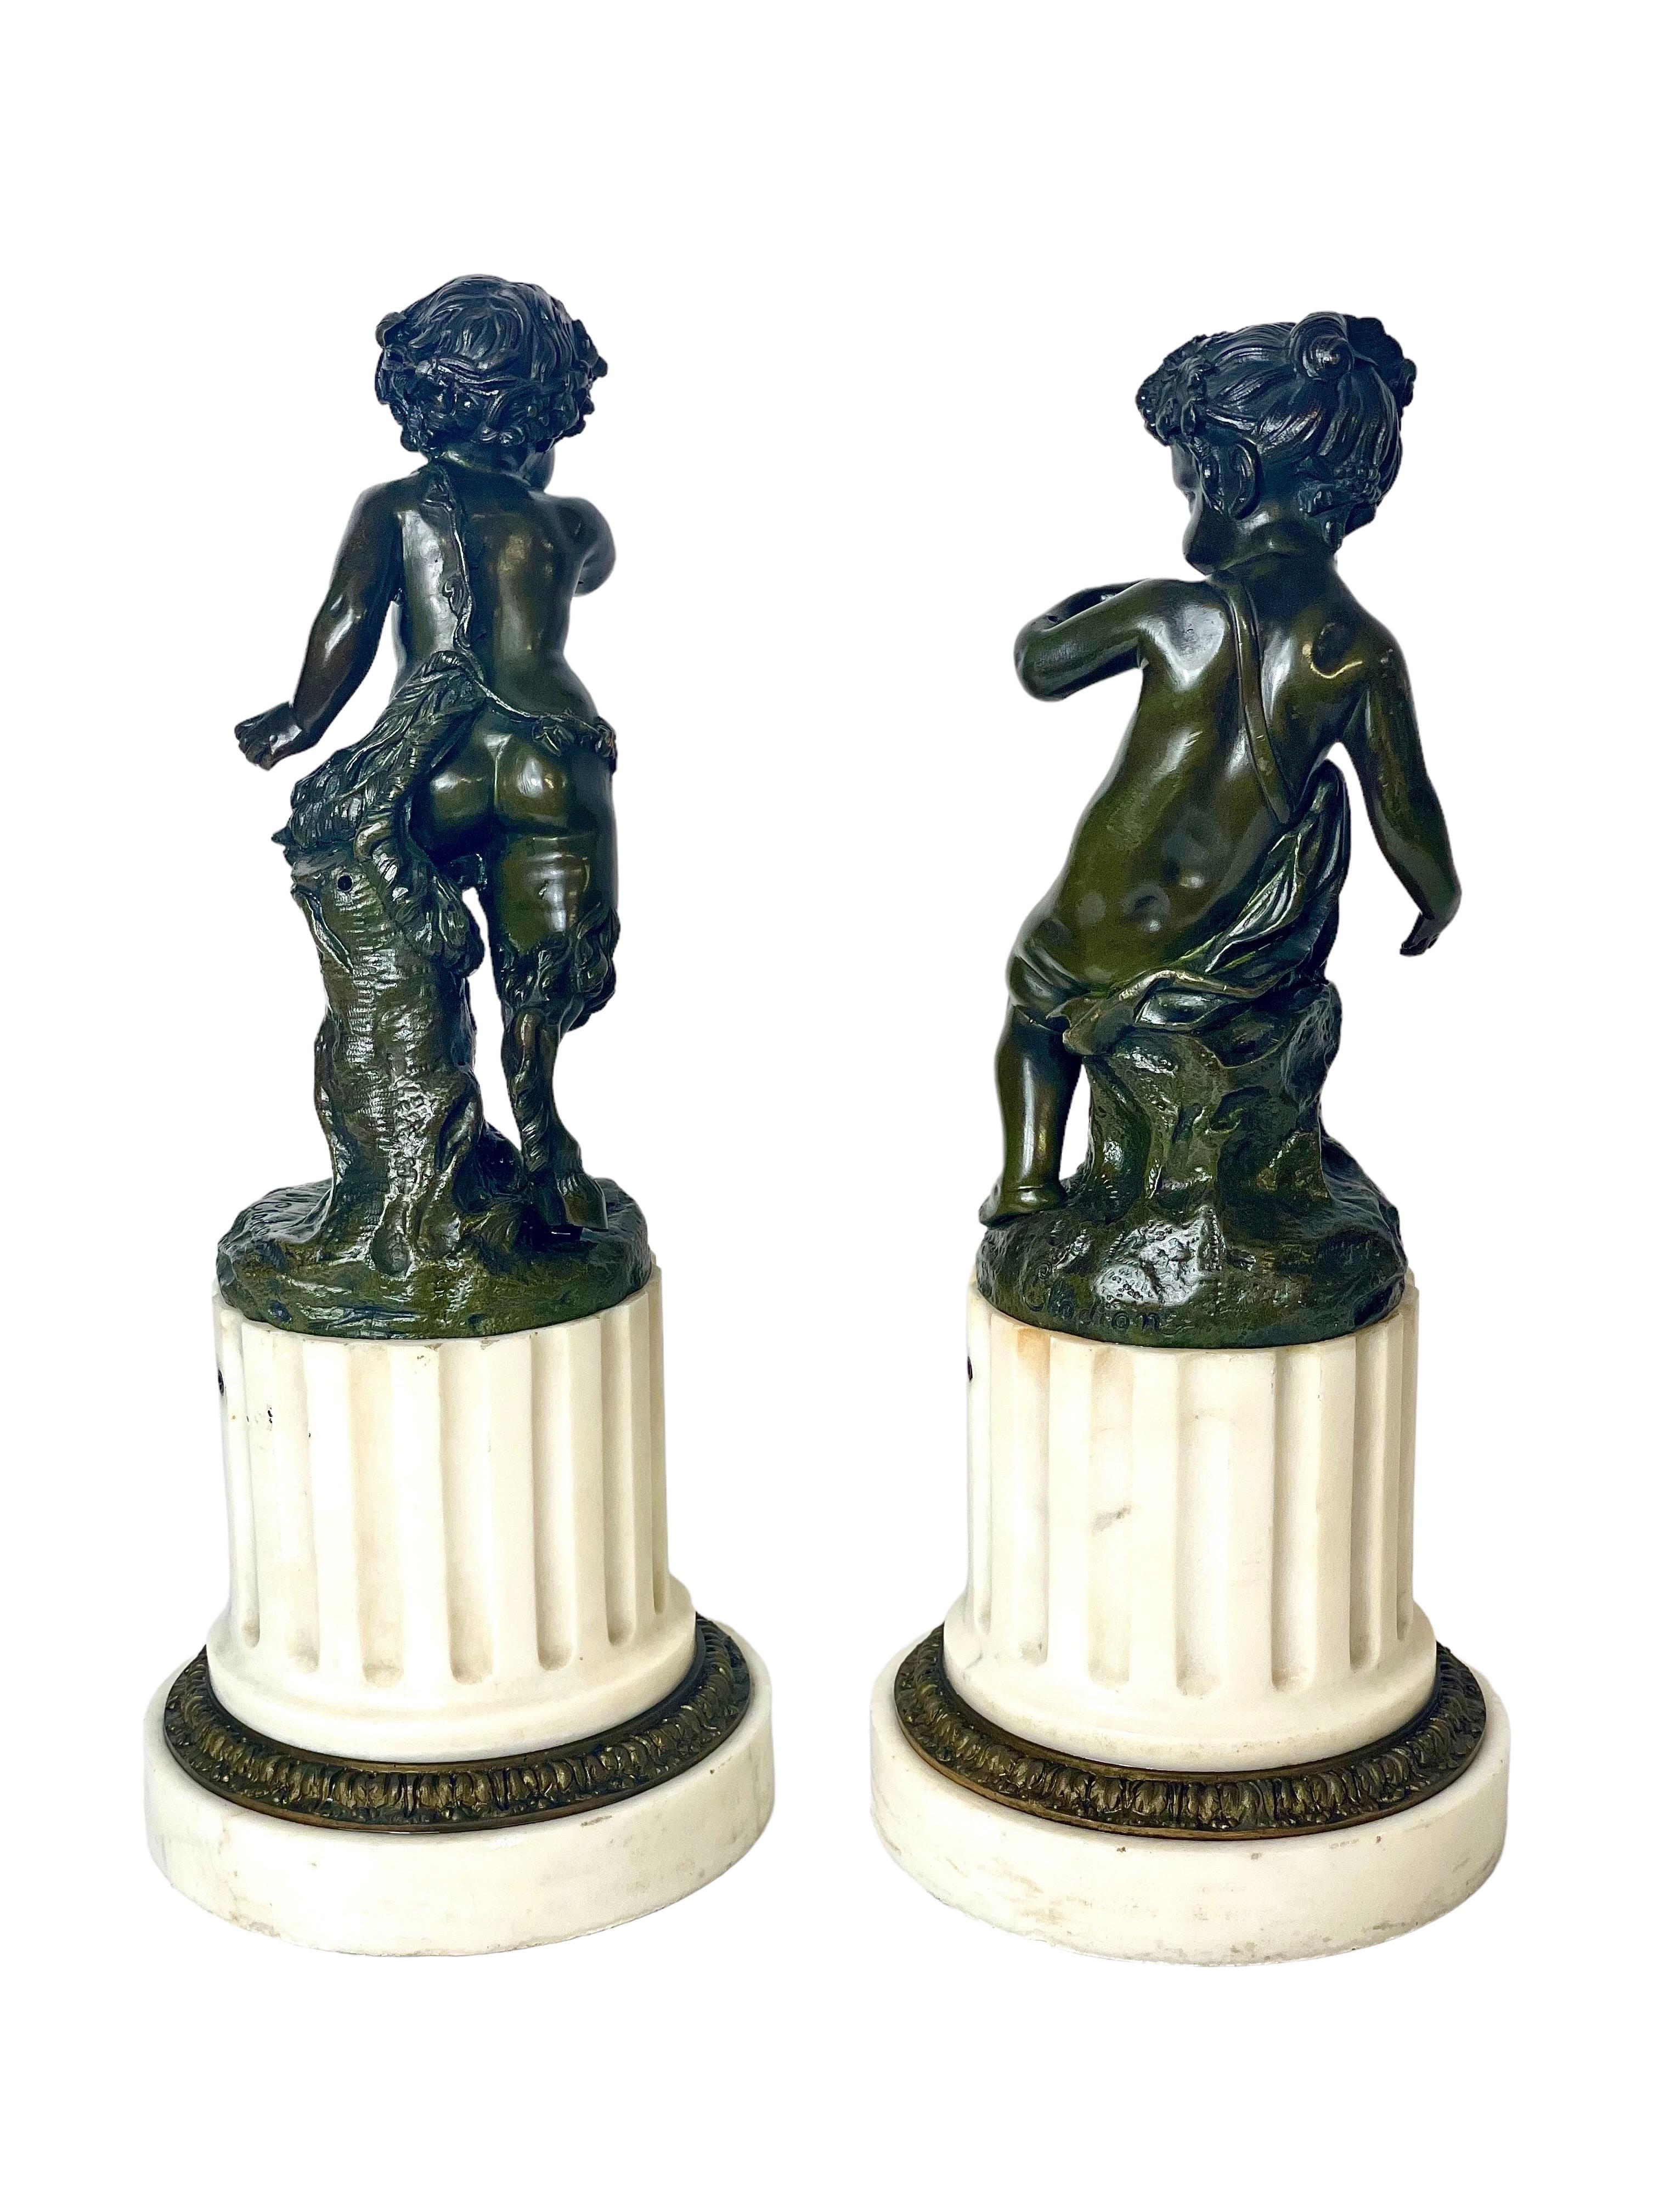 Une charmante paire de statuettes en bronze patiné, à l'origine des candélabres, d'après Clodion (Claude Michel Clodion 1738 - 1814), représentant un jeune satyre et une satyresse. Montées sur des colonnes tronquées en marbre blanc cannelé, et